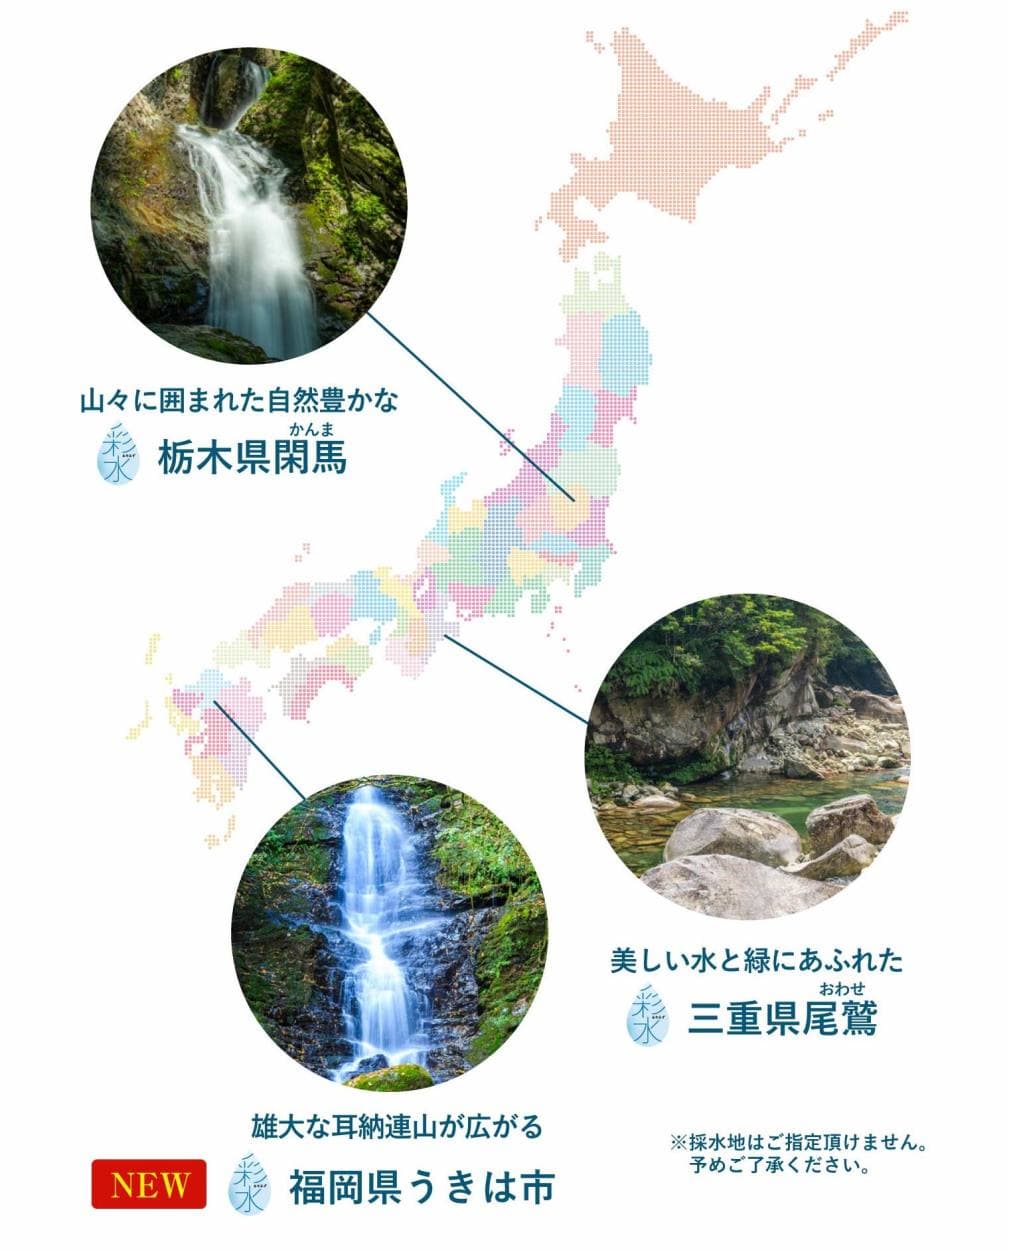 天然水「彩水」の採水地。山々に囲まれた自然豊かな栃木県閑馬。美しい水と緑にあふれた三重県尾鷲。雄大な耳納連山が広がる福岡県うきは市。